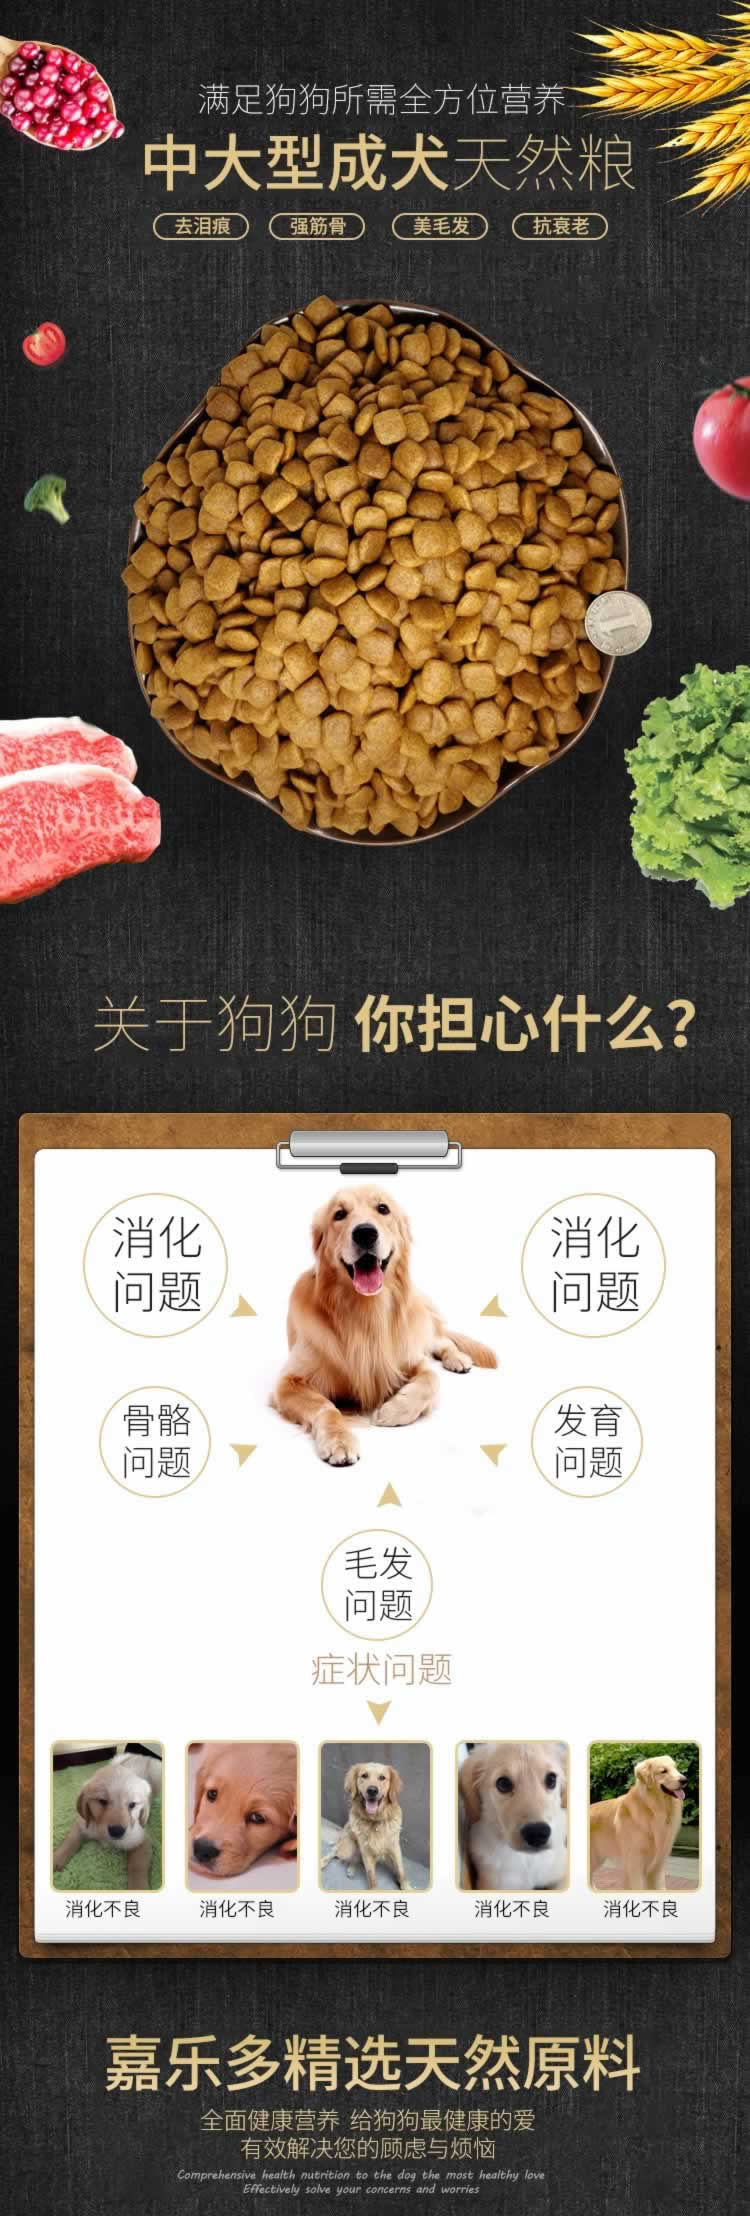 中大型成犬天然狗粮宠物粮描述